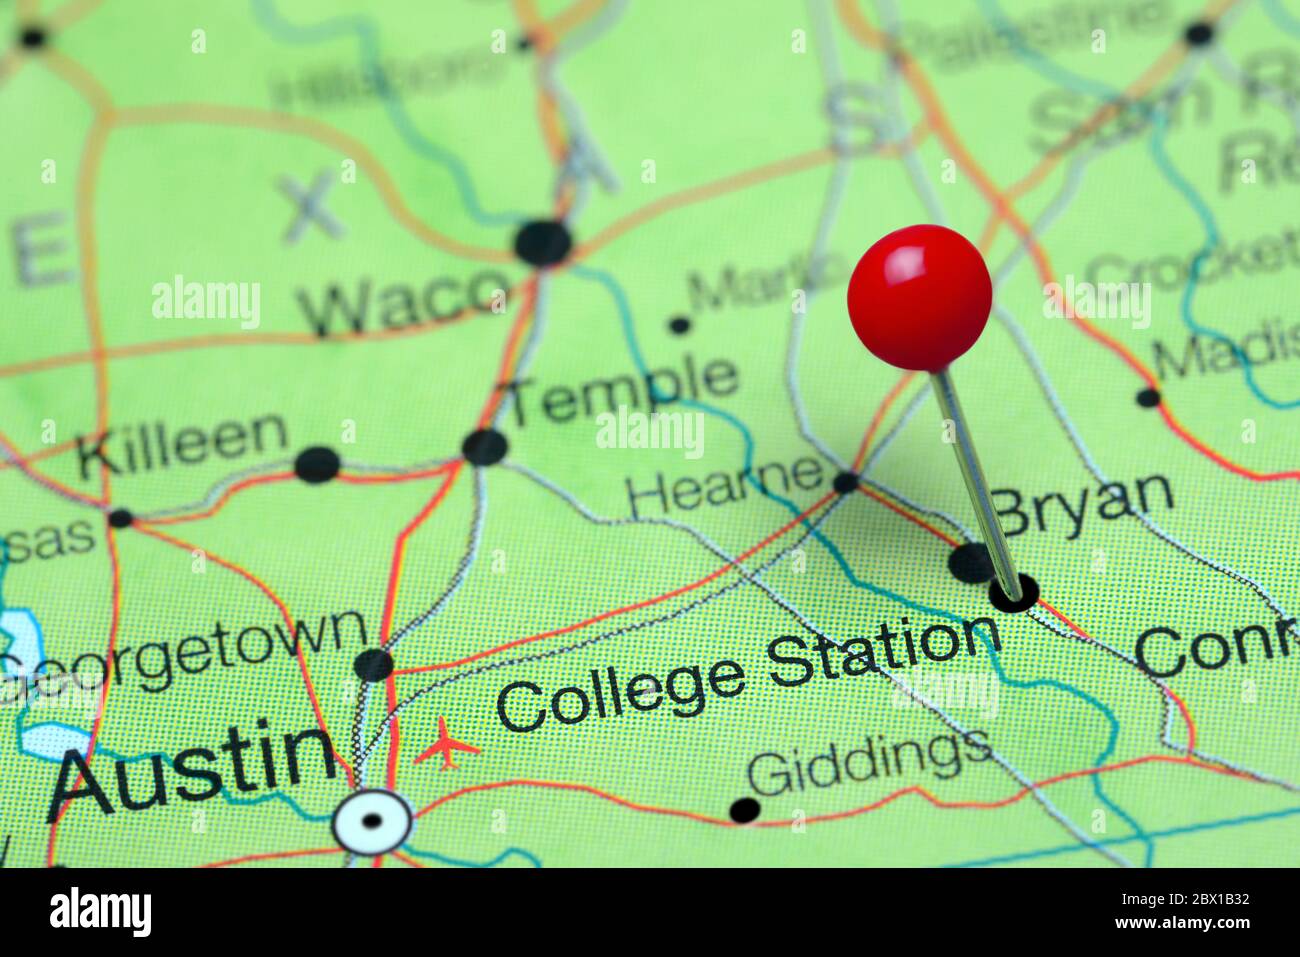 College Station auf einer Karte von Texas, USA Stockfoto